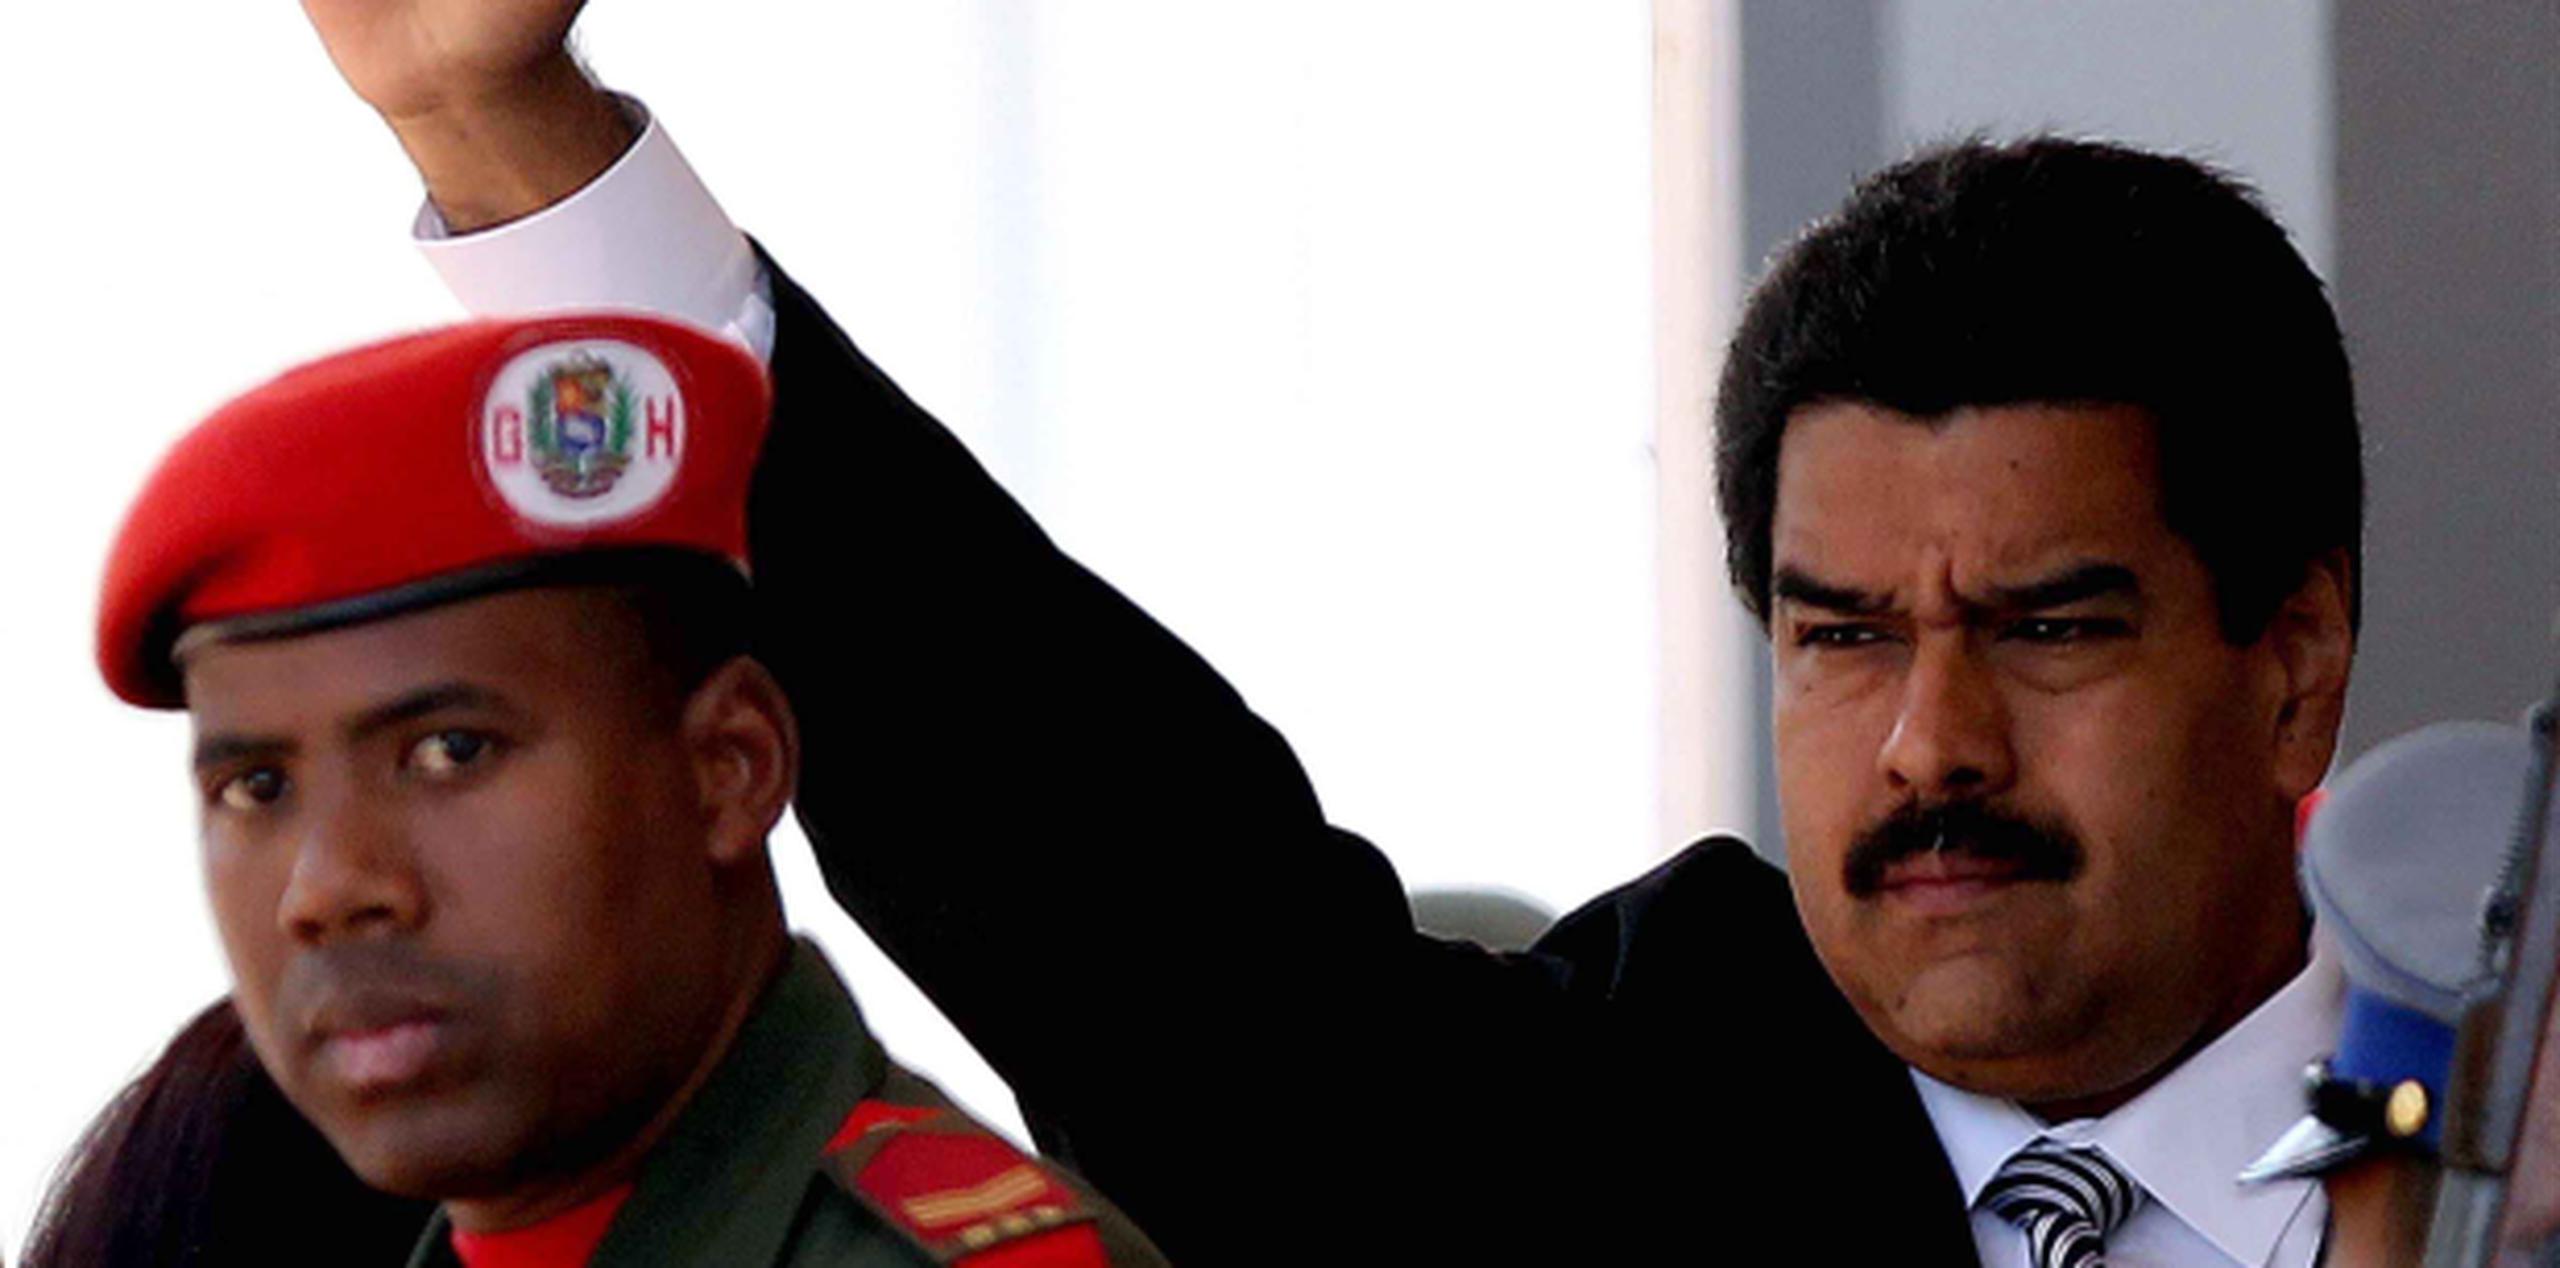 Más temprano, Maduro encabezó el multitudinario último adiós a Chávez en el funeral de Estado al que asistieron una treintena de jefes de Estado, incluidos sus principales aliados de Latinoamérica. (EFE/Mauricio Castañeda)